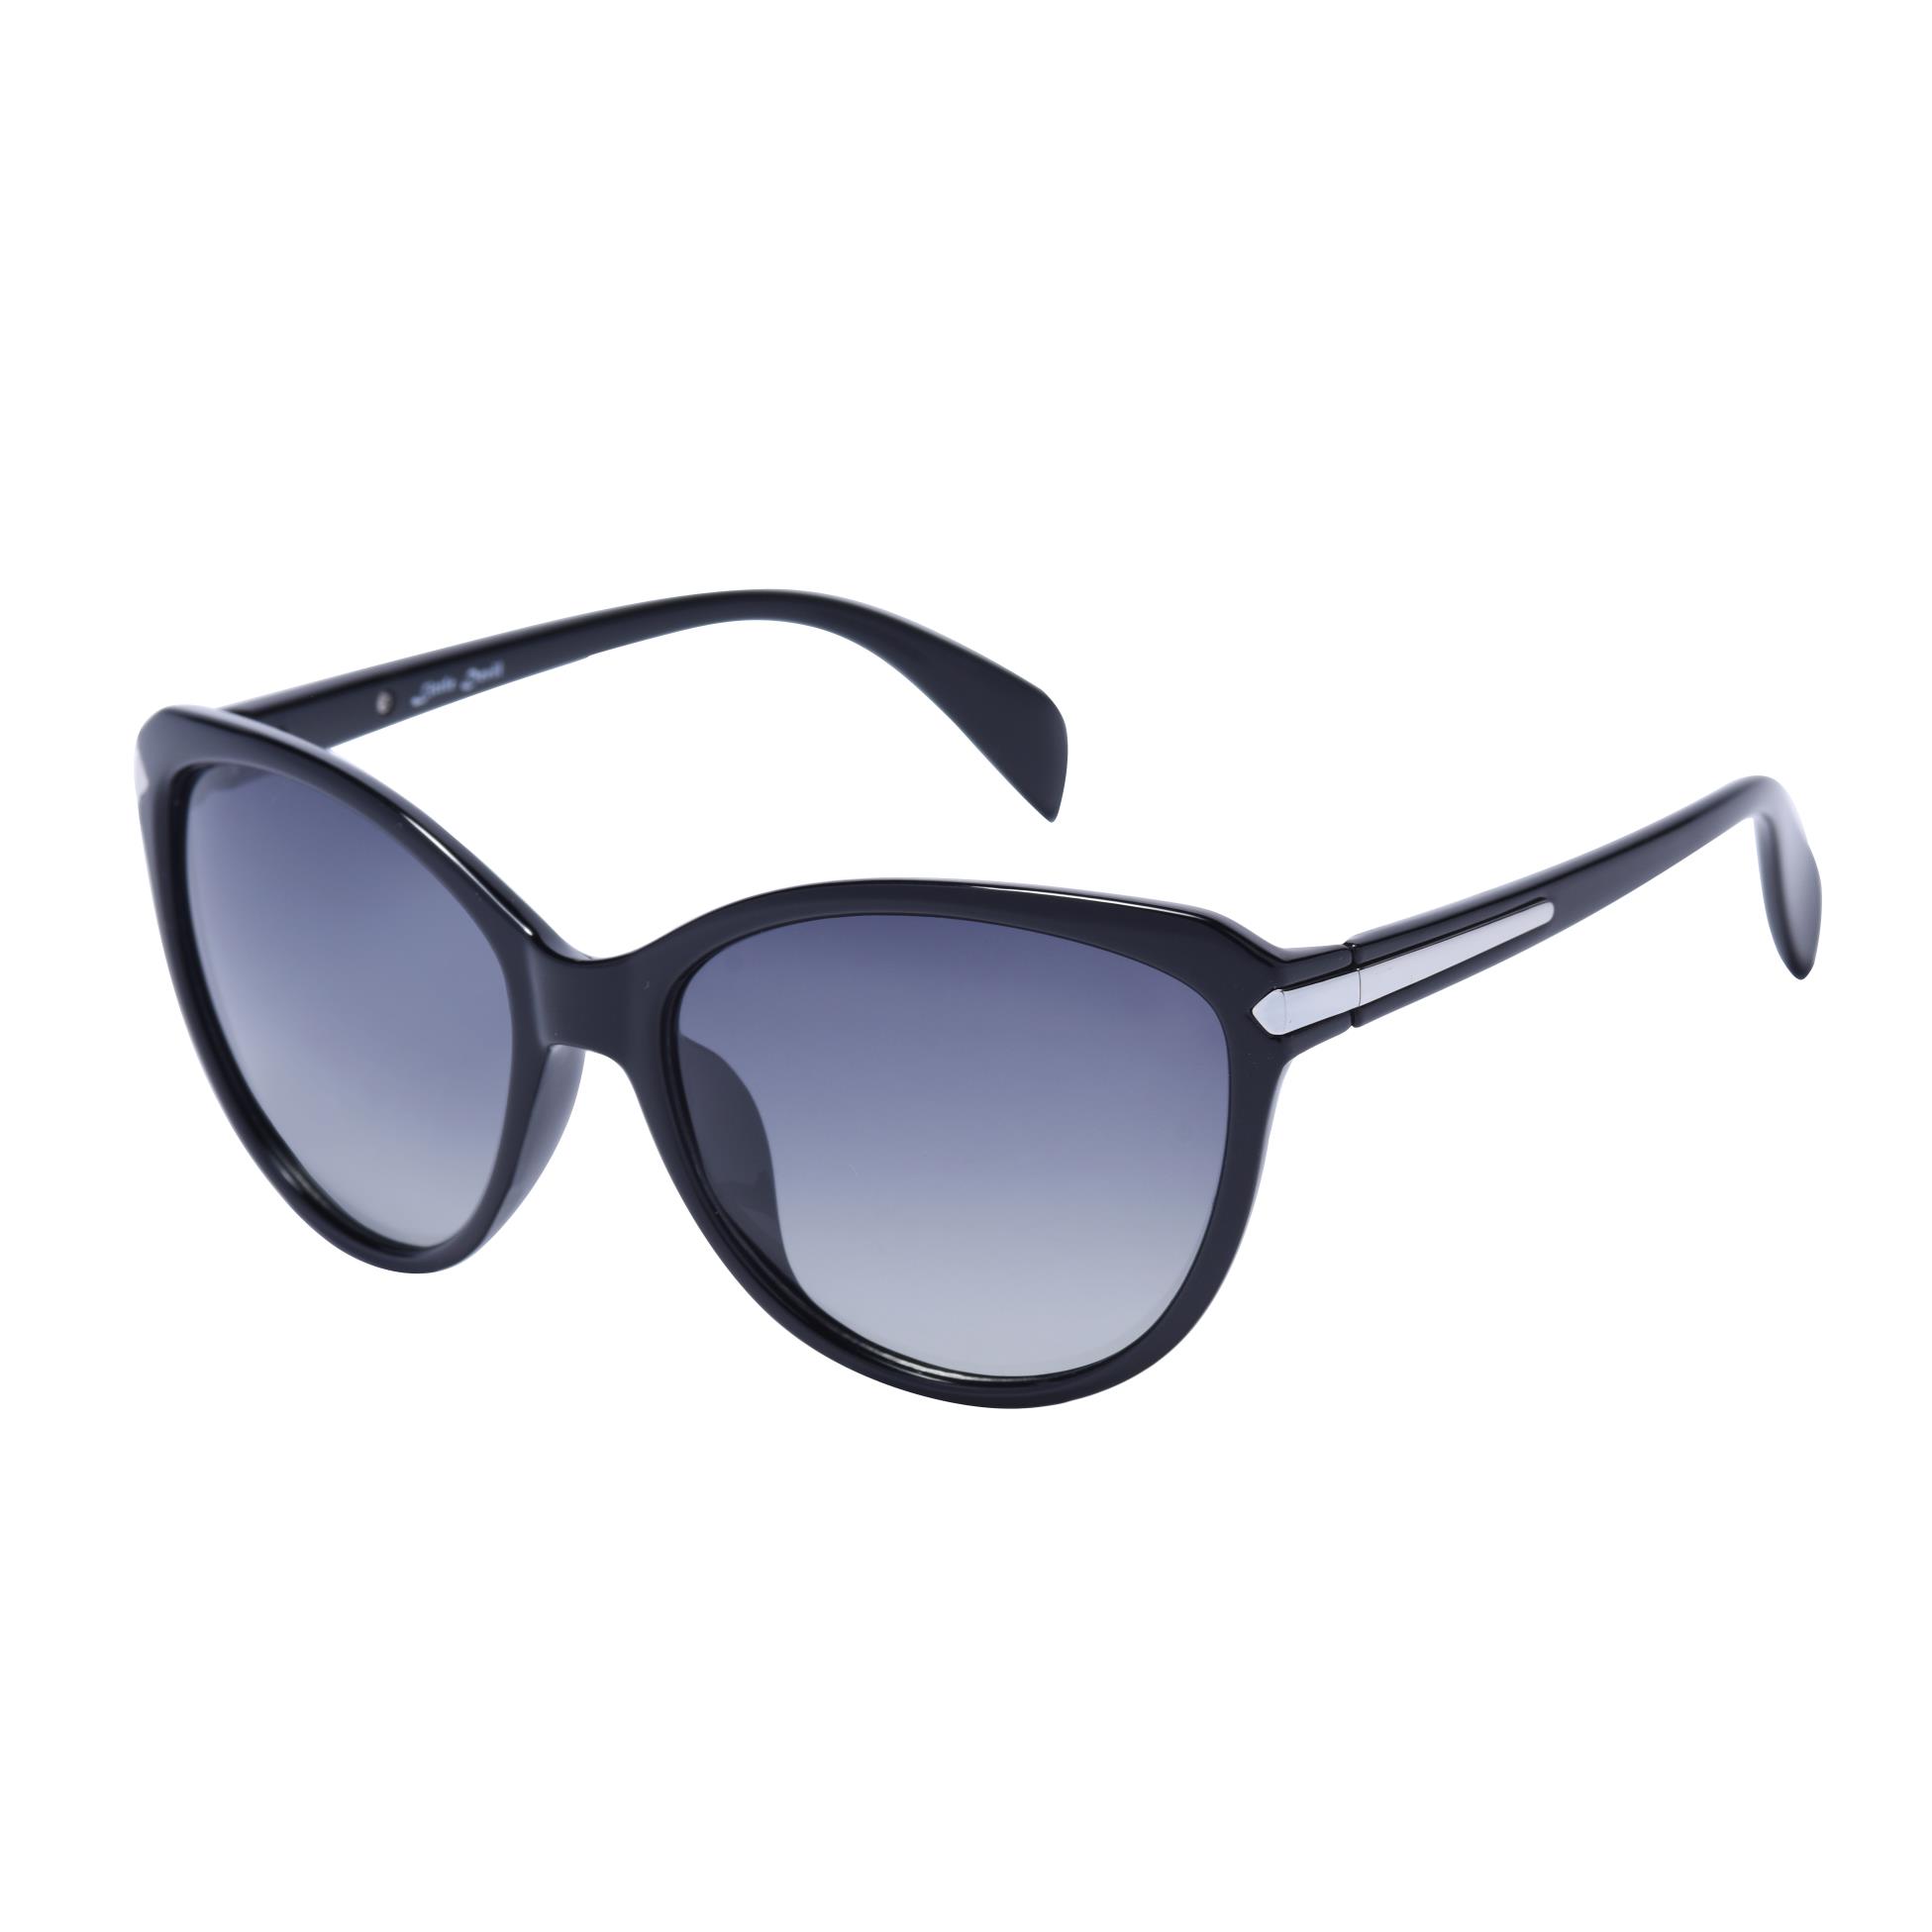 Modne damskie okulary przeciwsłoneczne cateye 5505